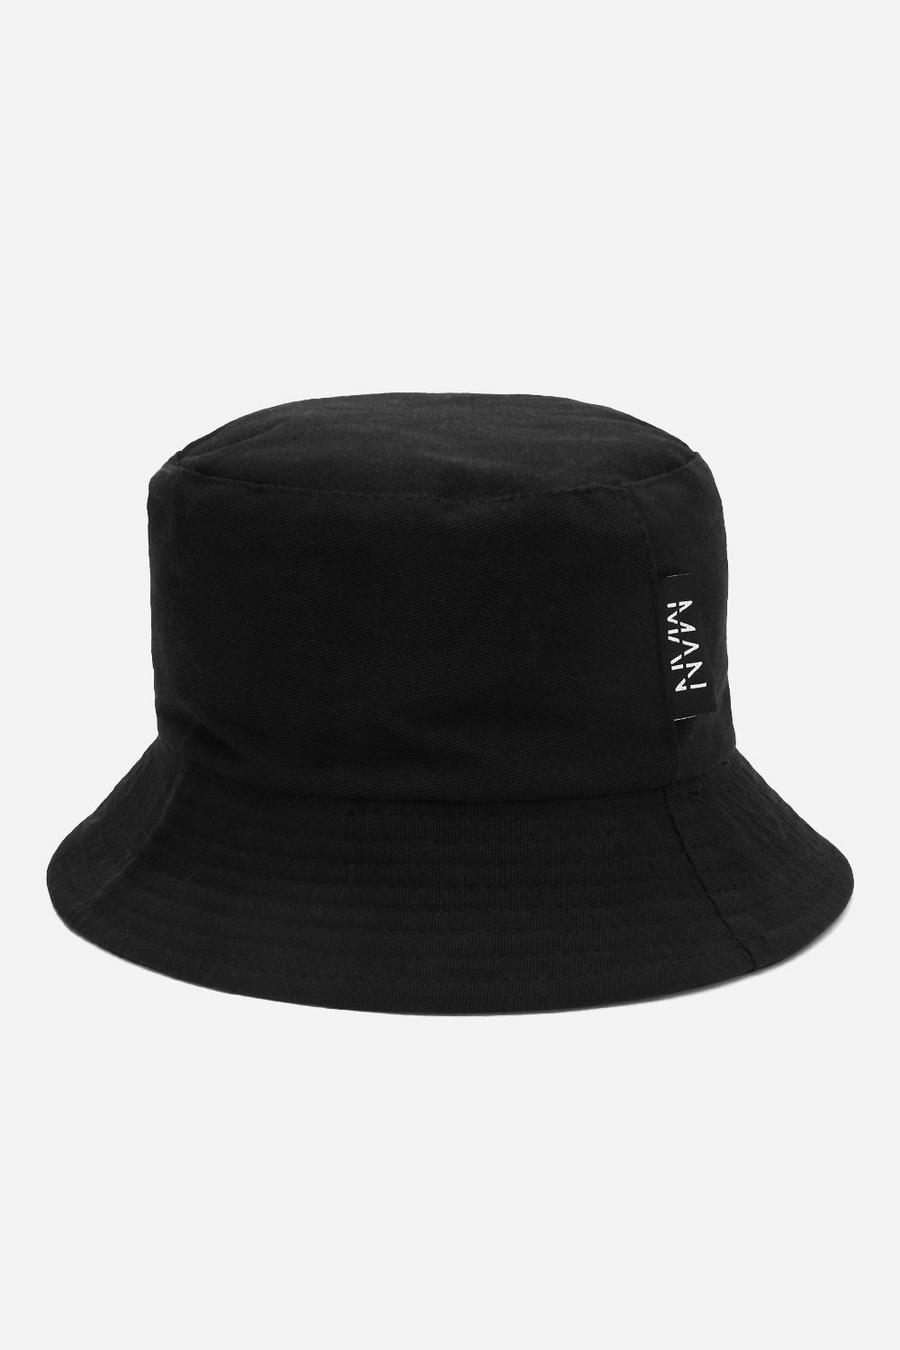 שחור כובע טמבל עם תווית וכיתוב MAN וקו חוצה image number 1